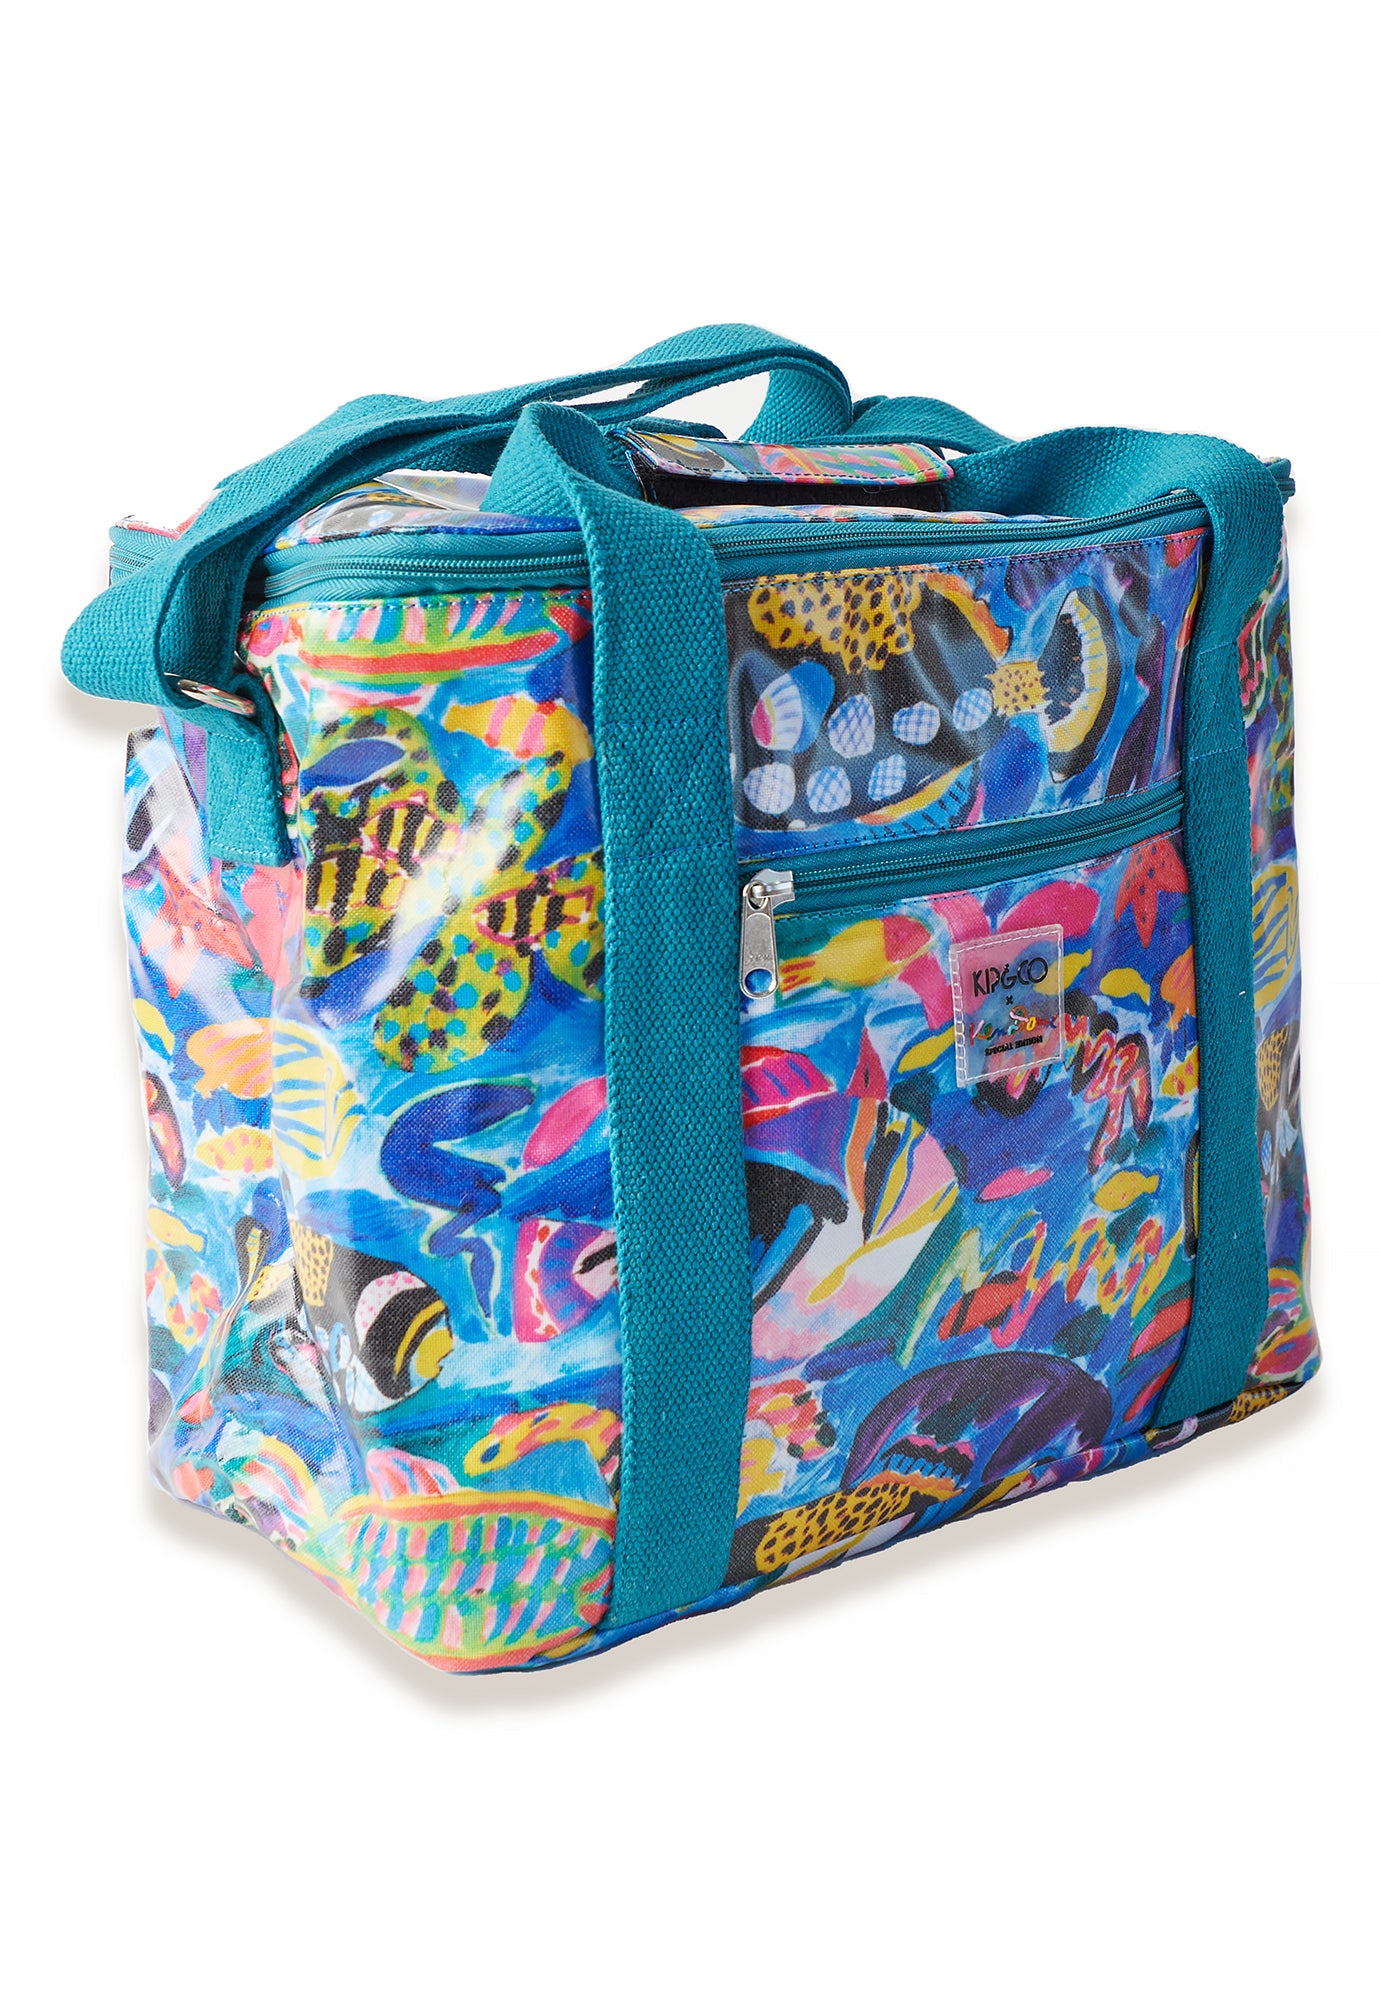 kip&co x ken done - barrier reef garden cooler bag